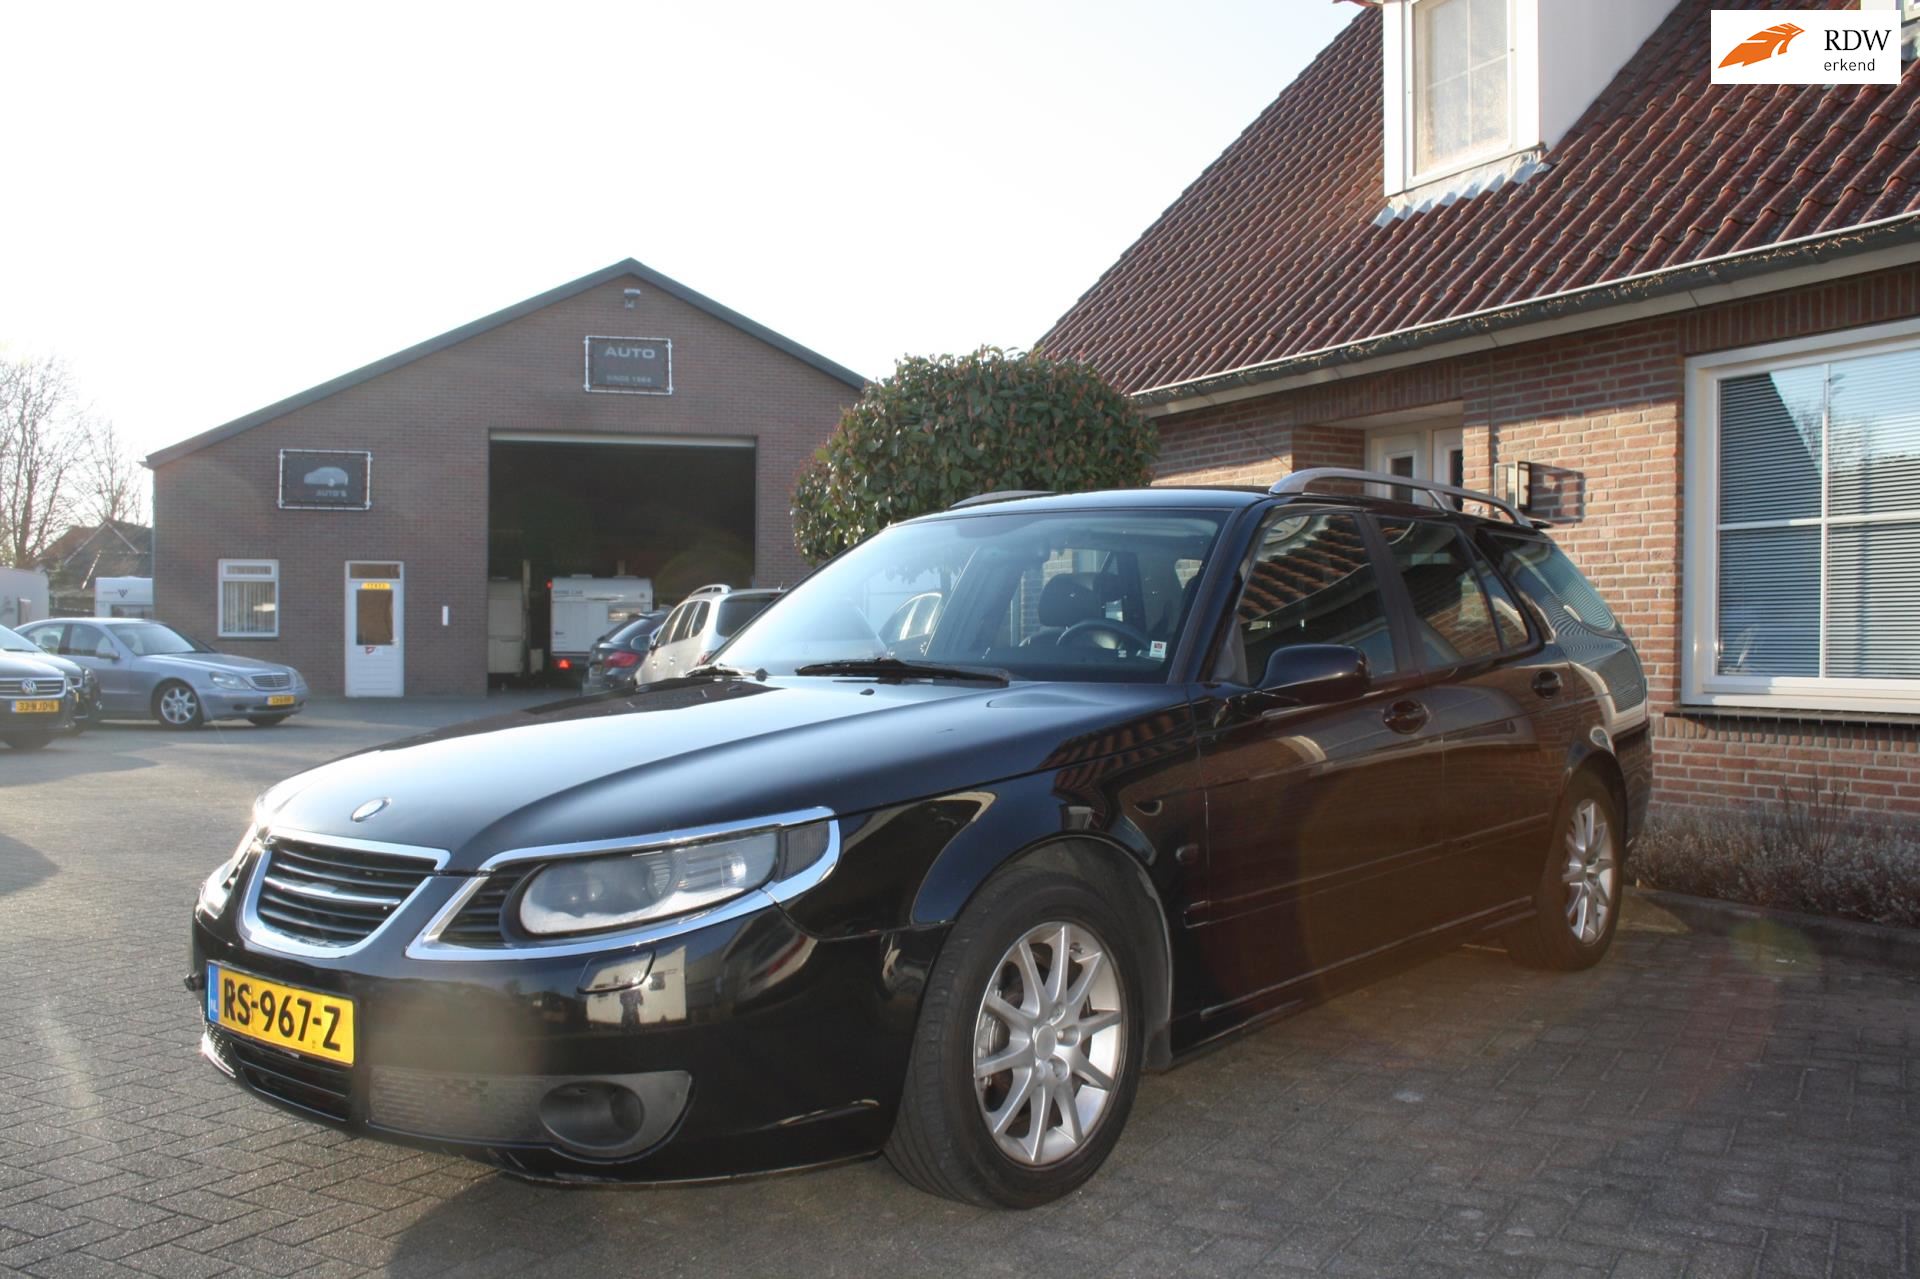 uitspraak zak ontspannen Saab 9-5 - Estate 2.3t Zwart Leder Trekhaak Airco Dakrails Benzine uit 2007  - www.auto-tewes.nl